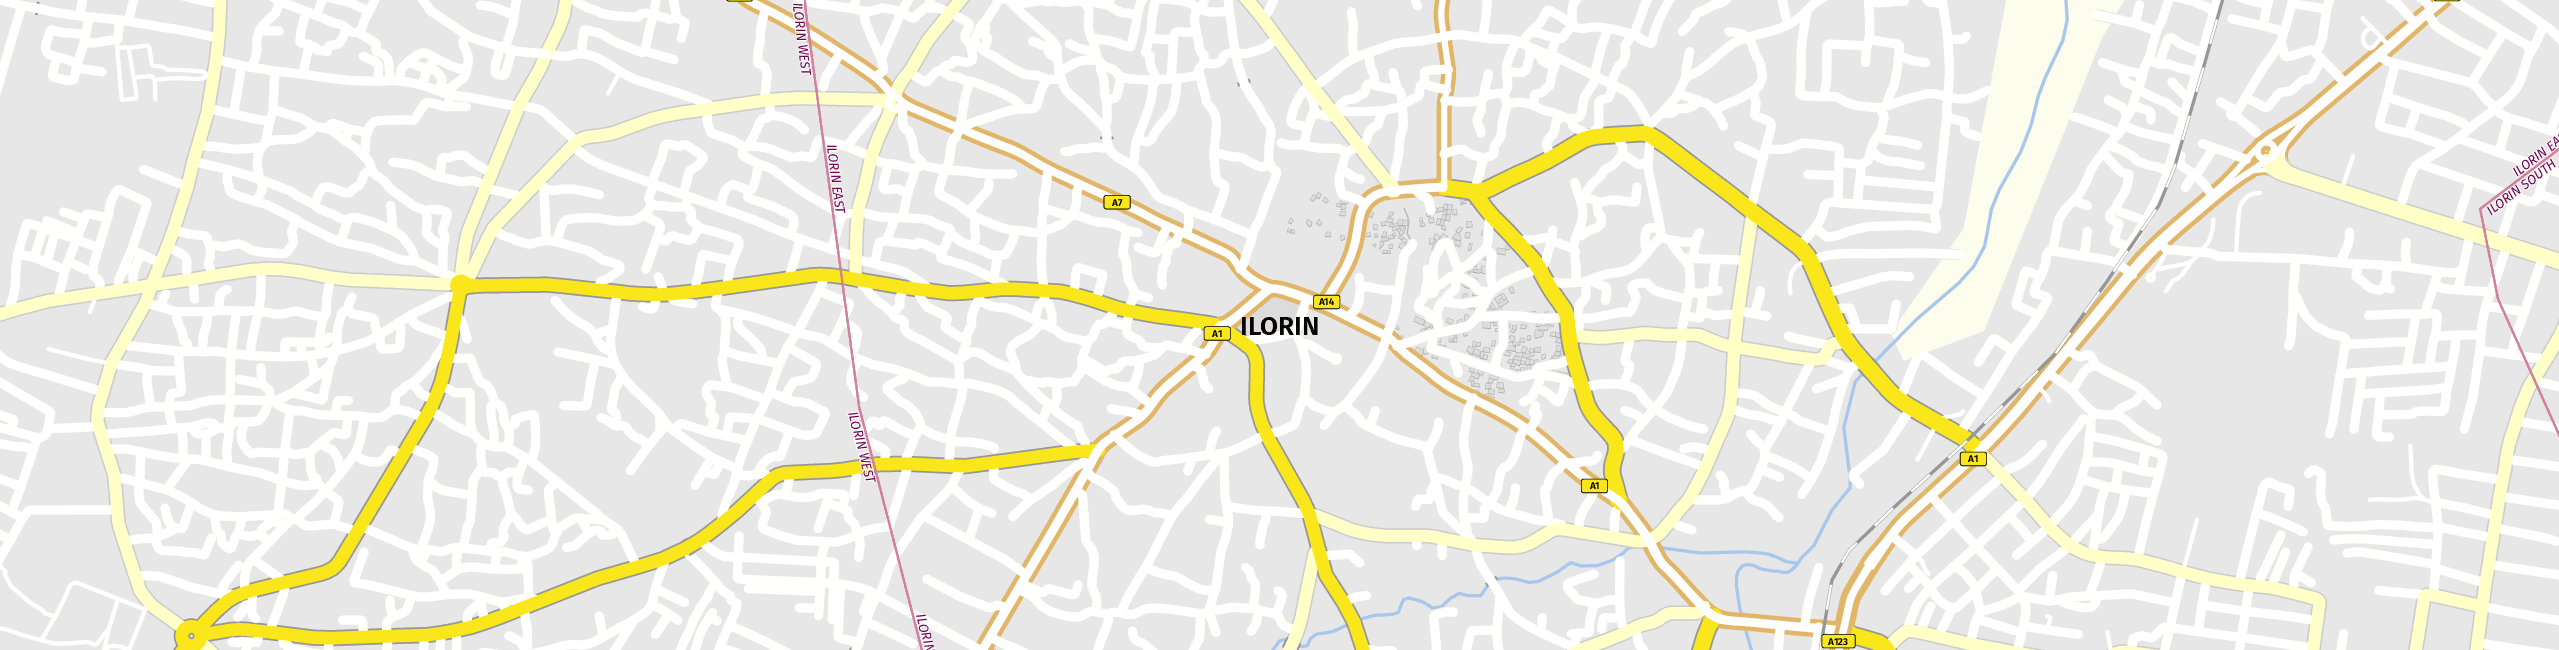 Stadtplan Ilorin zum Downloaden.